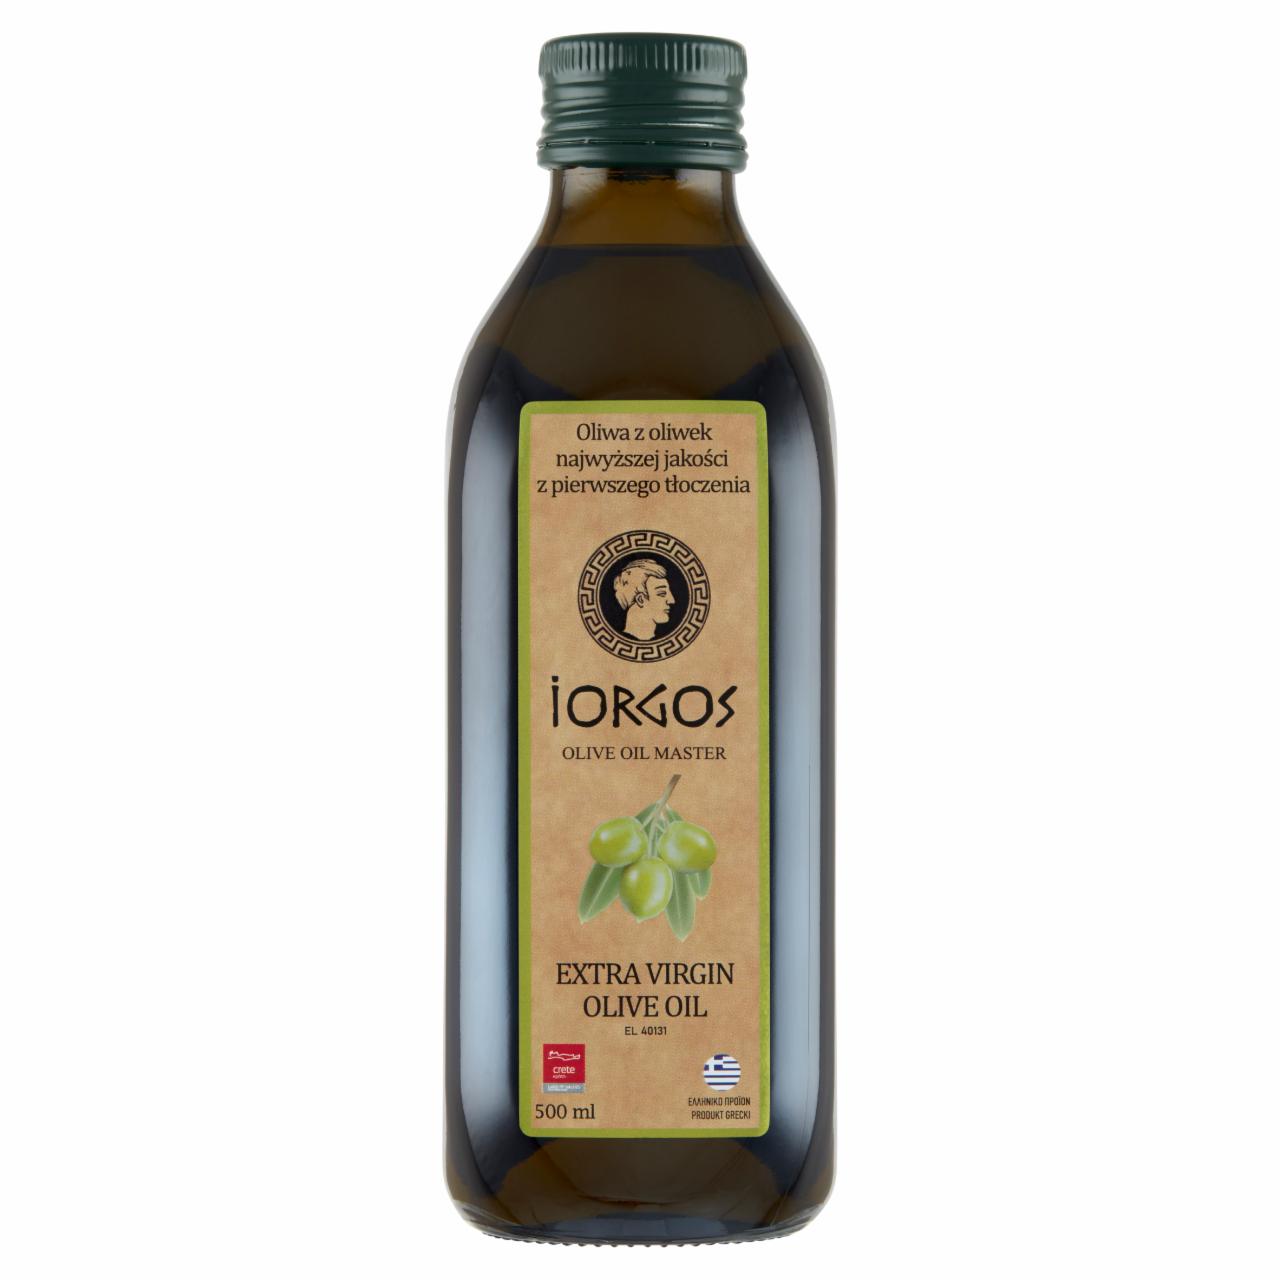 Zdjęcia - Jorgos Oliwa z oliwek najwyższej jakości z pierwszego tłoczenia 500 ml